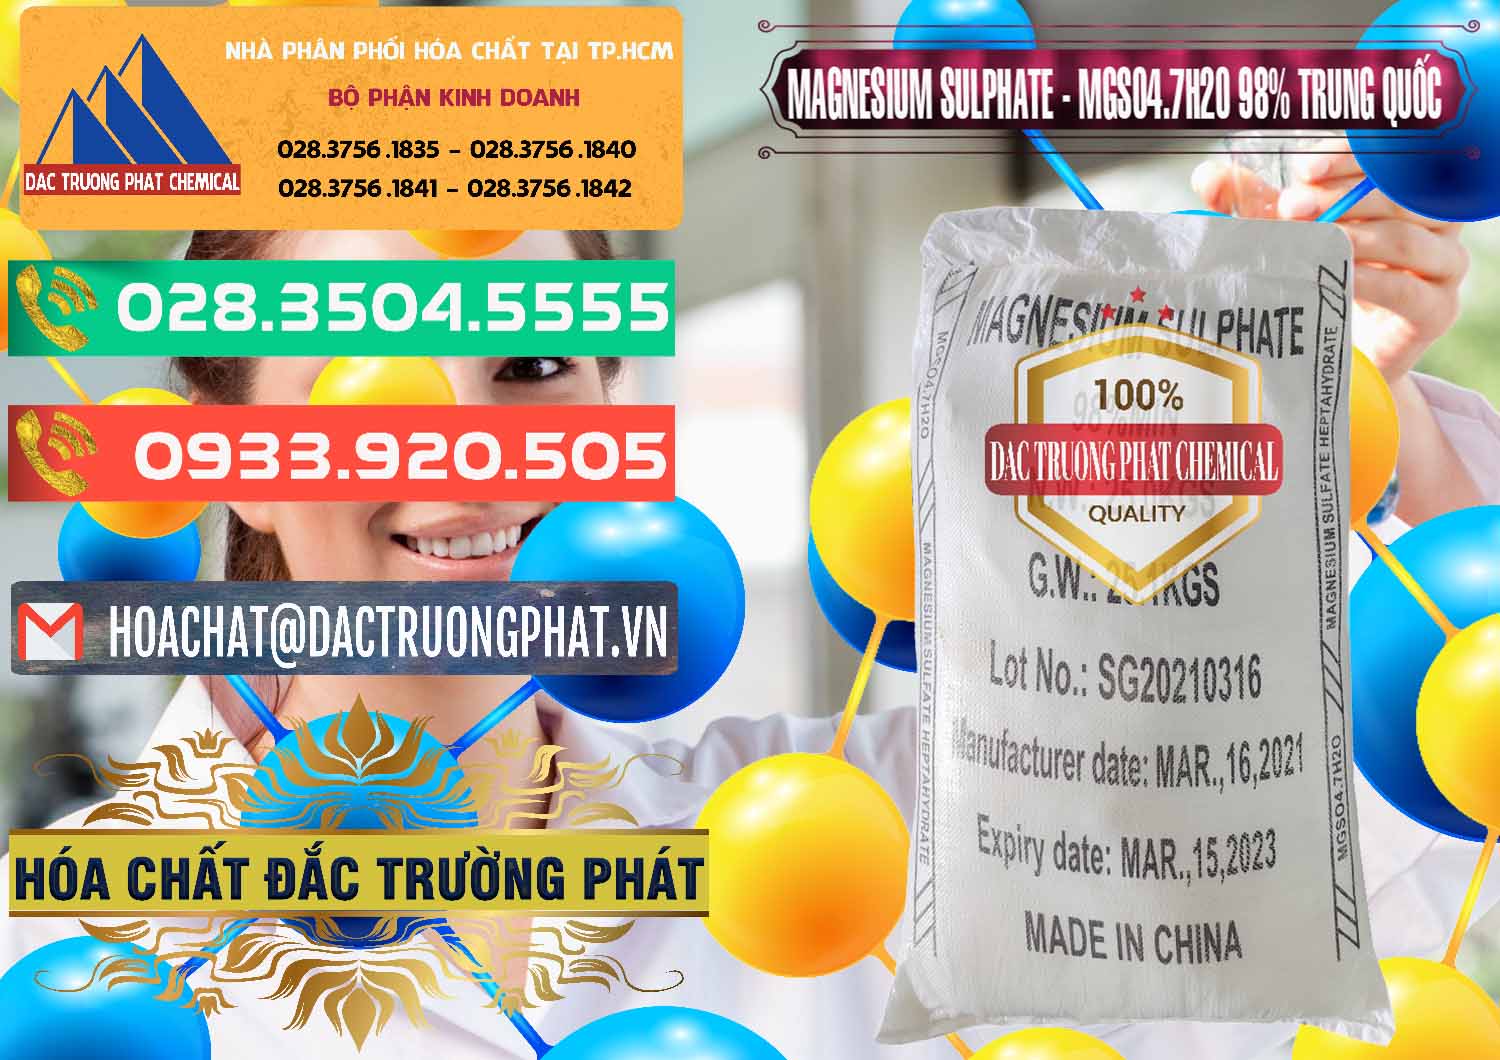 Nơi chuyên nhập khẩu & bán MGSO4.7H2O – Magnesium Sulphate 98% Trung Quốc China - 0229 - Cty chuyên phân phối và kinh doanh hóa chất tại TP.HCM - congtyhoachat.com.vn